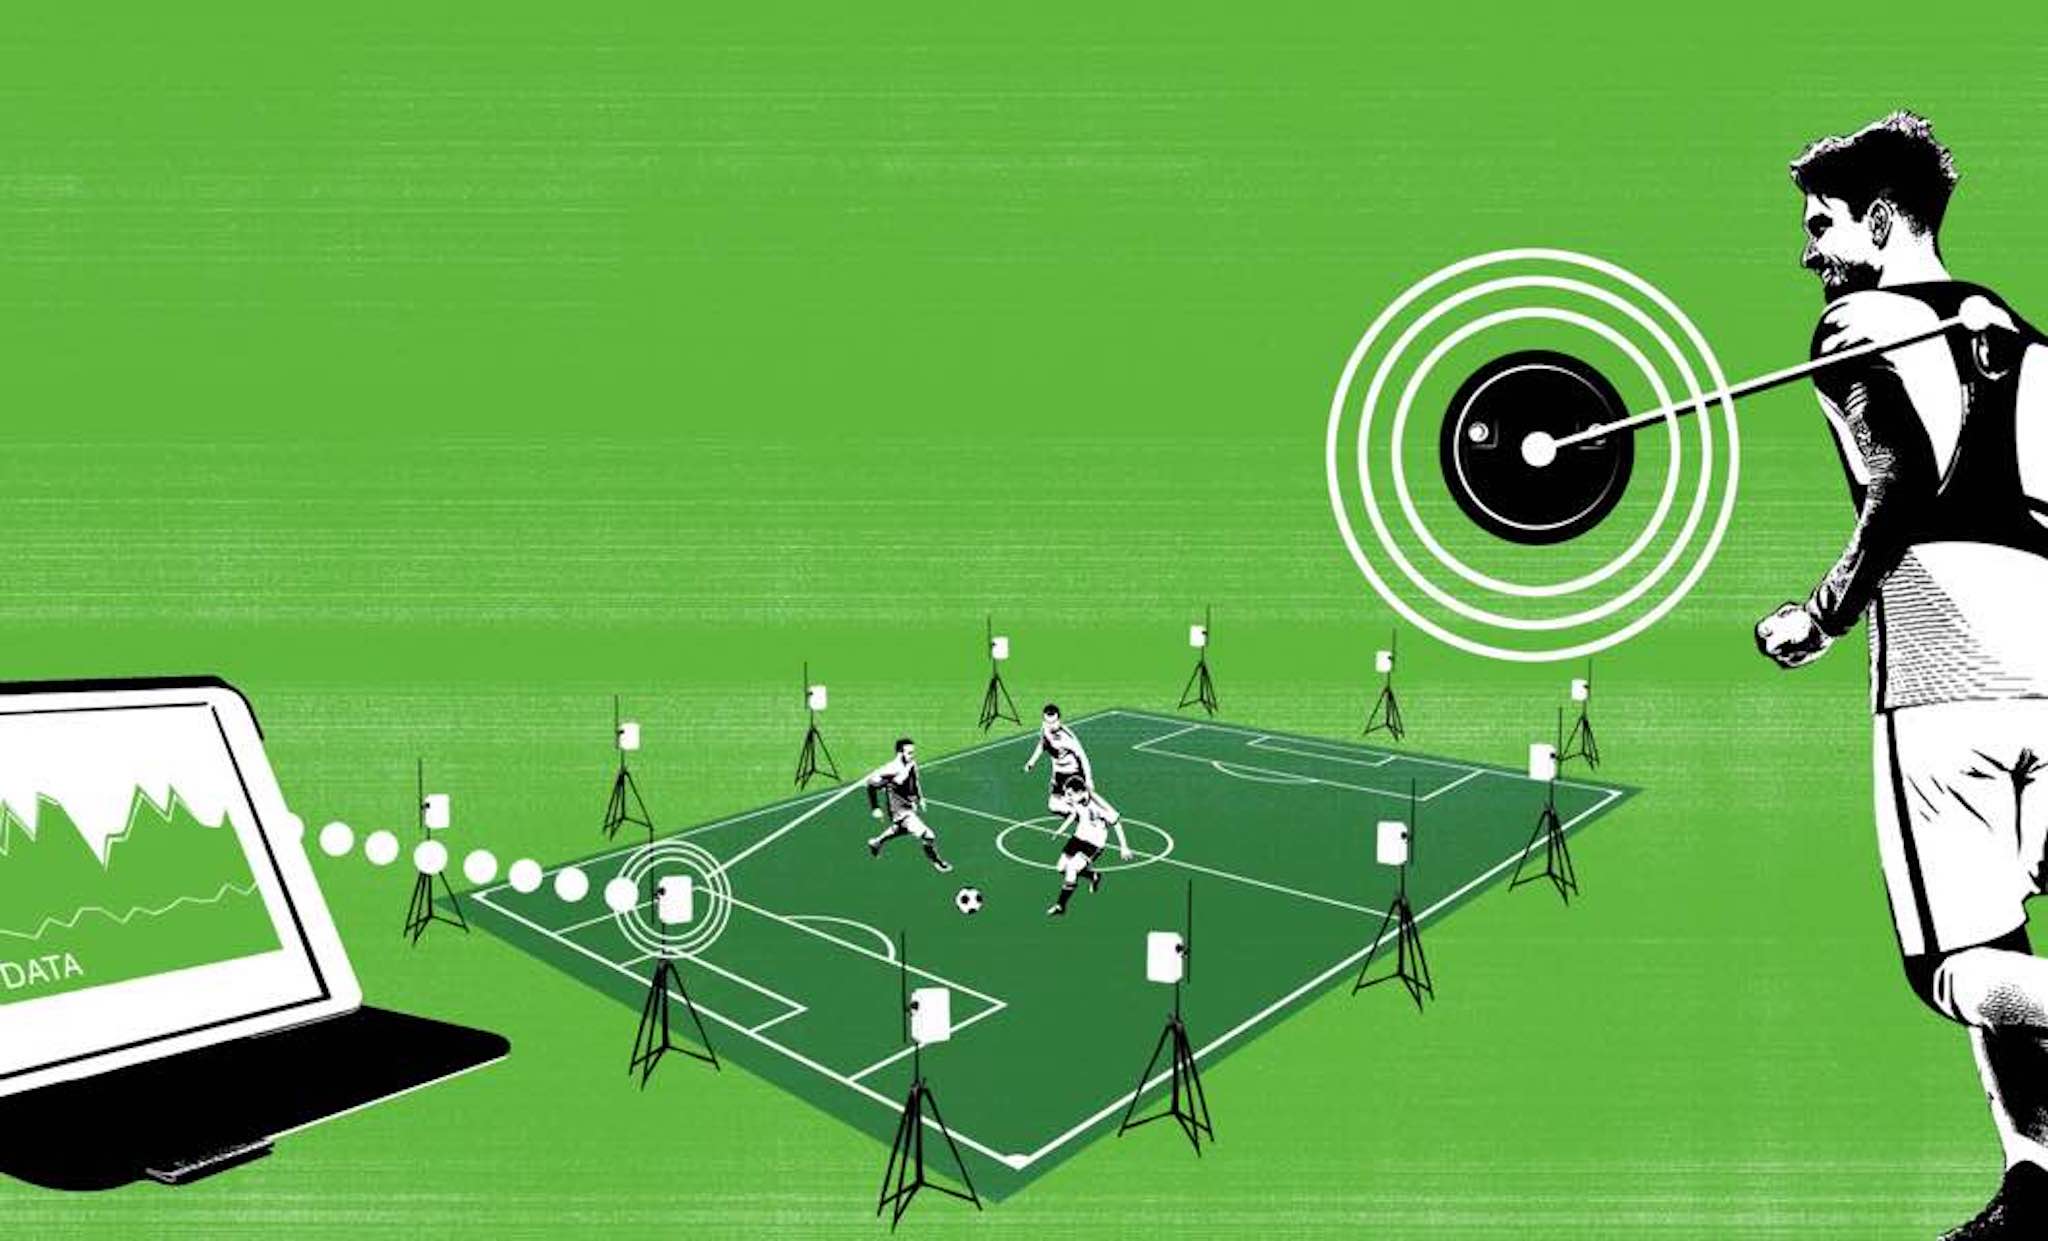 Tìm hiểu về công nghệ theo dõi và phân tích cầu thủ đang dùng ở World Cup 2018